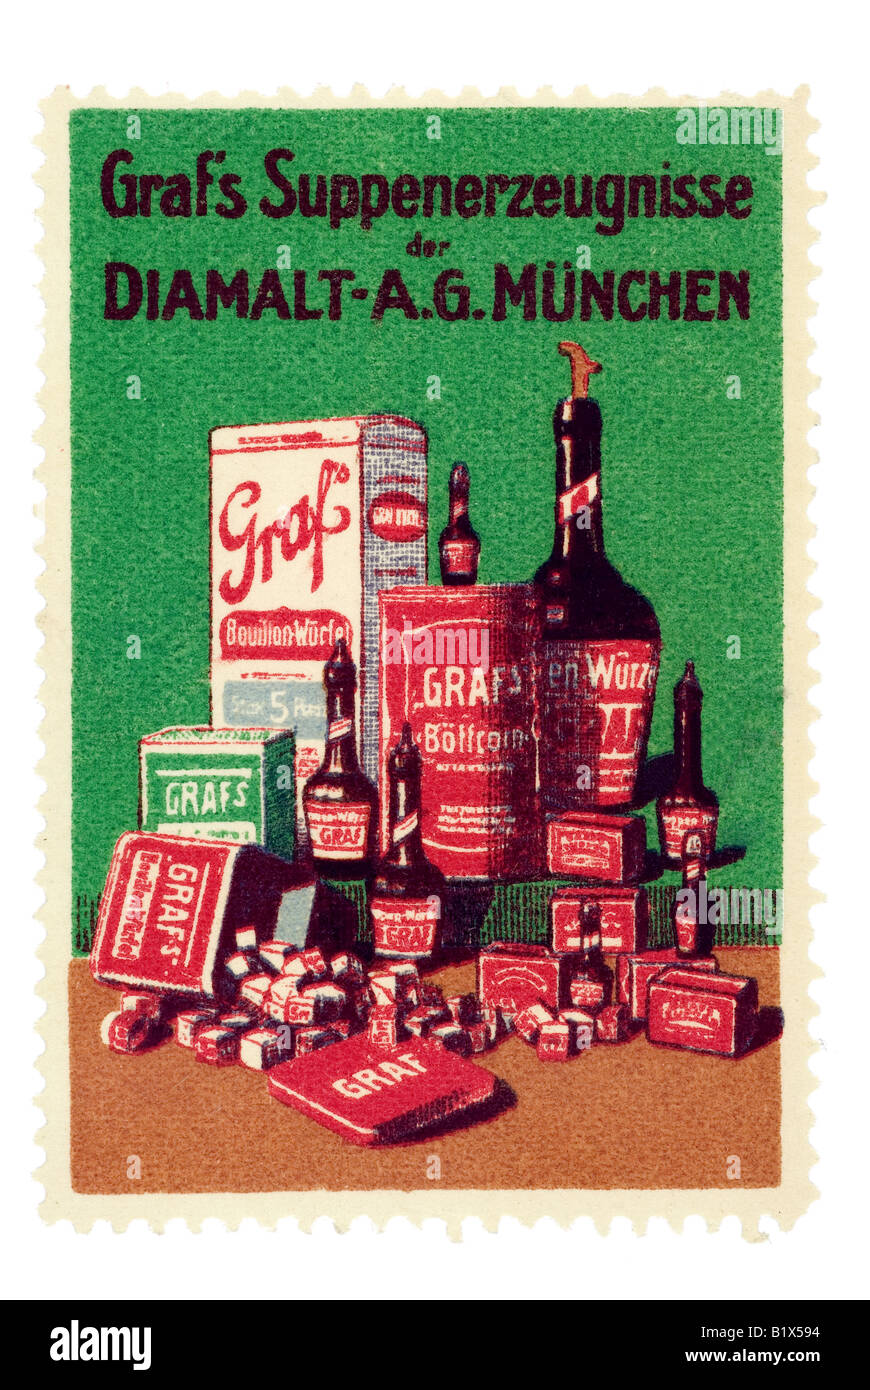 trading stamp Graf s Suppenerzeugnisse der Diamalt AG München Stock Photo